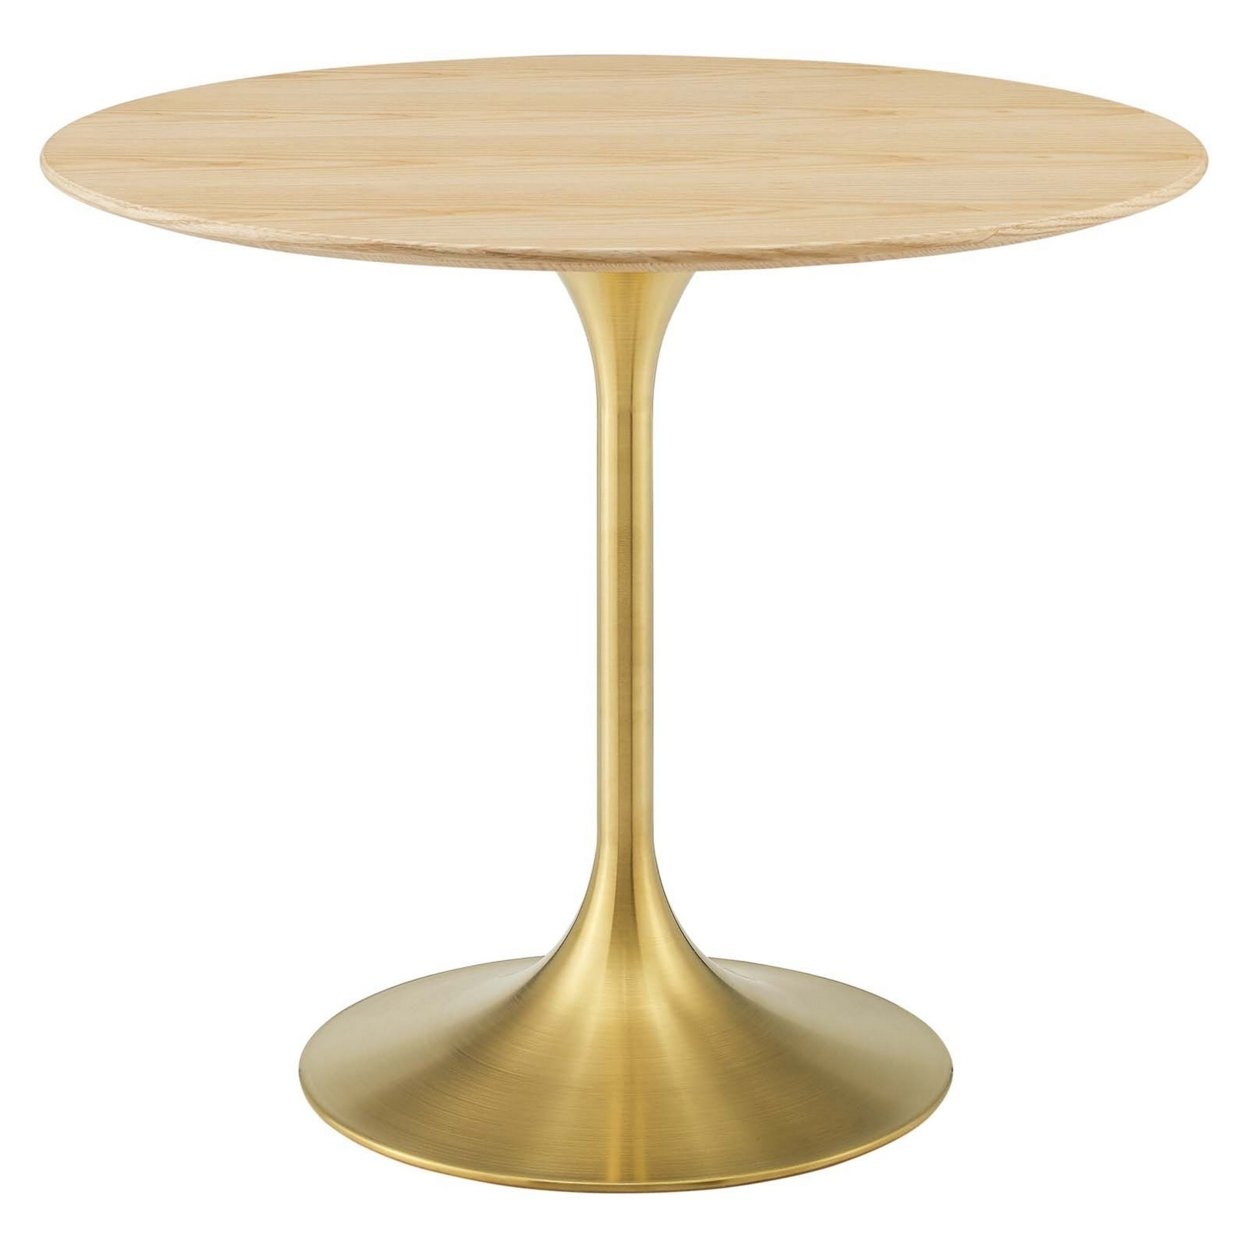 Lippa 36 Wood Dining Table, Gold Natural